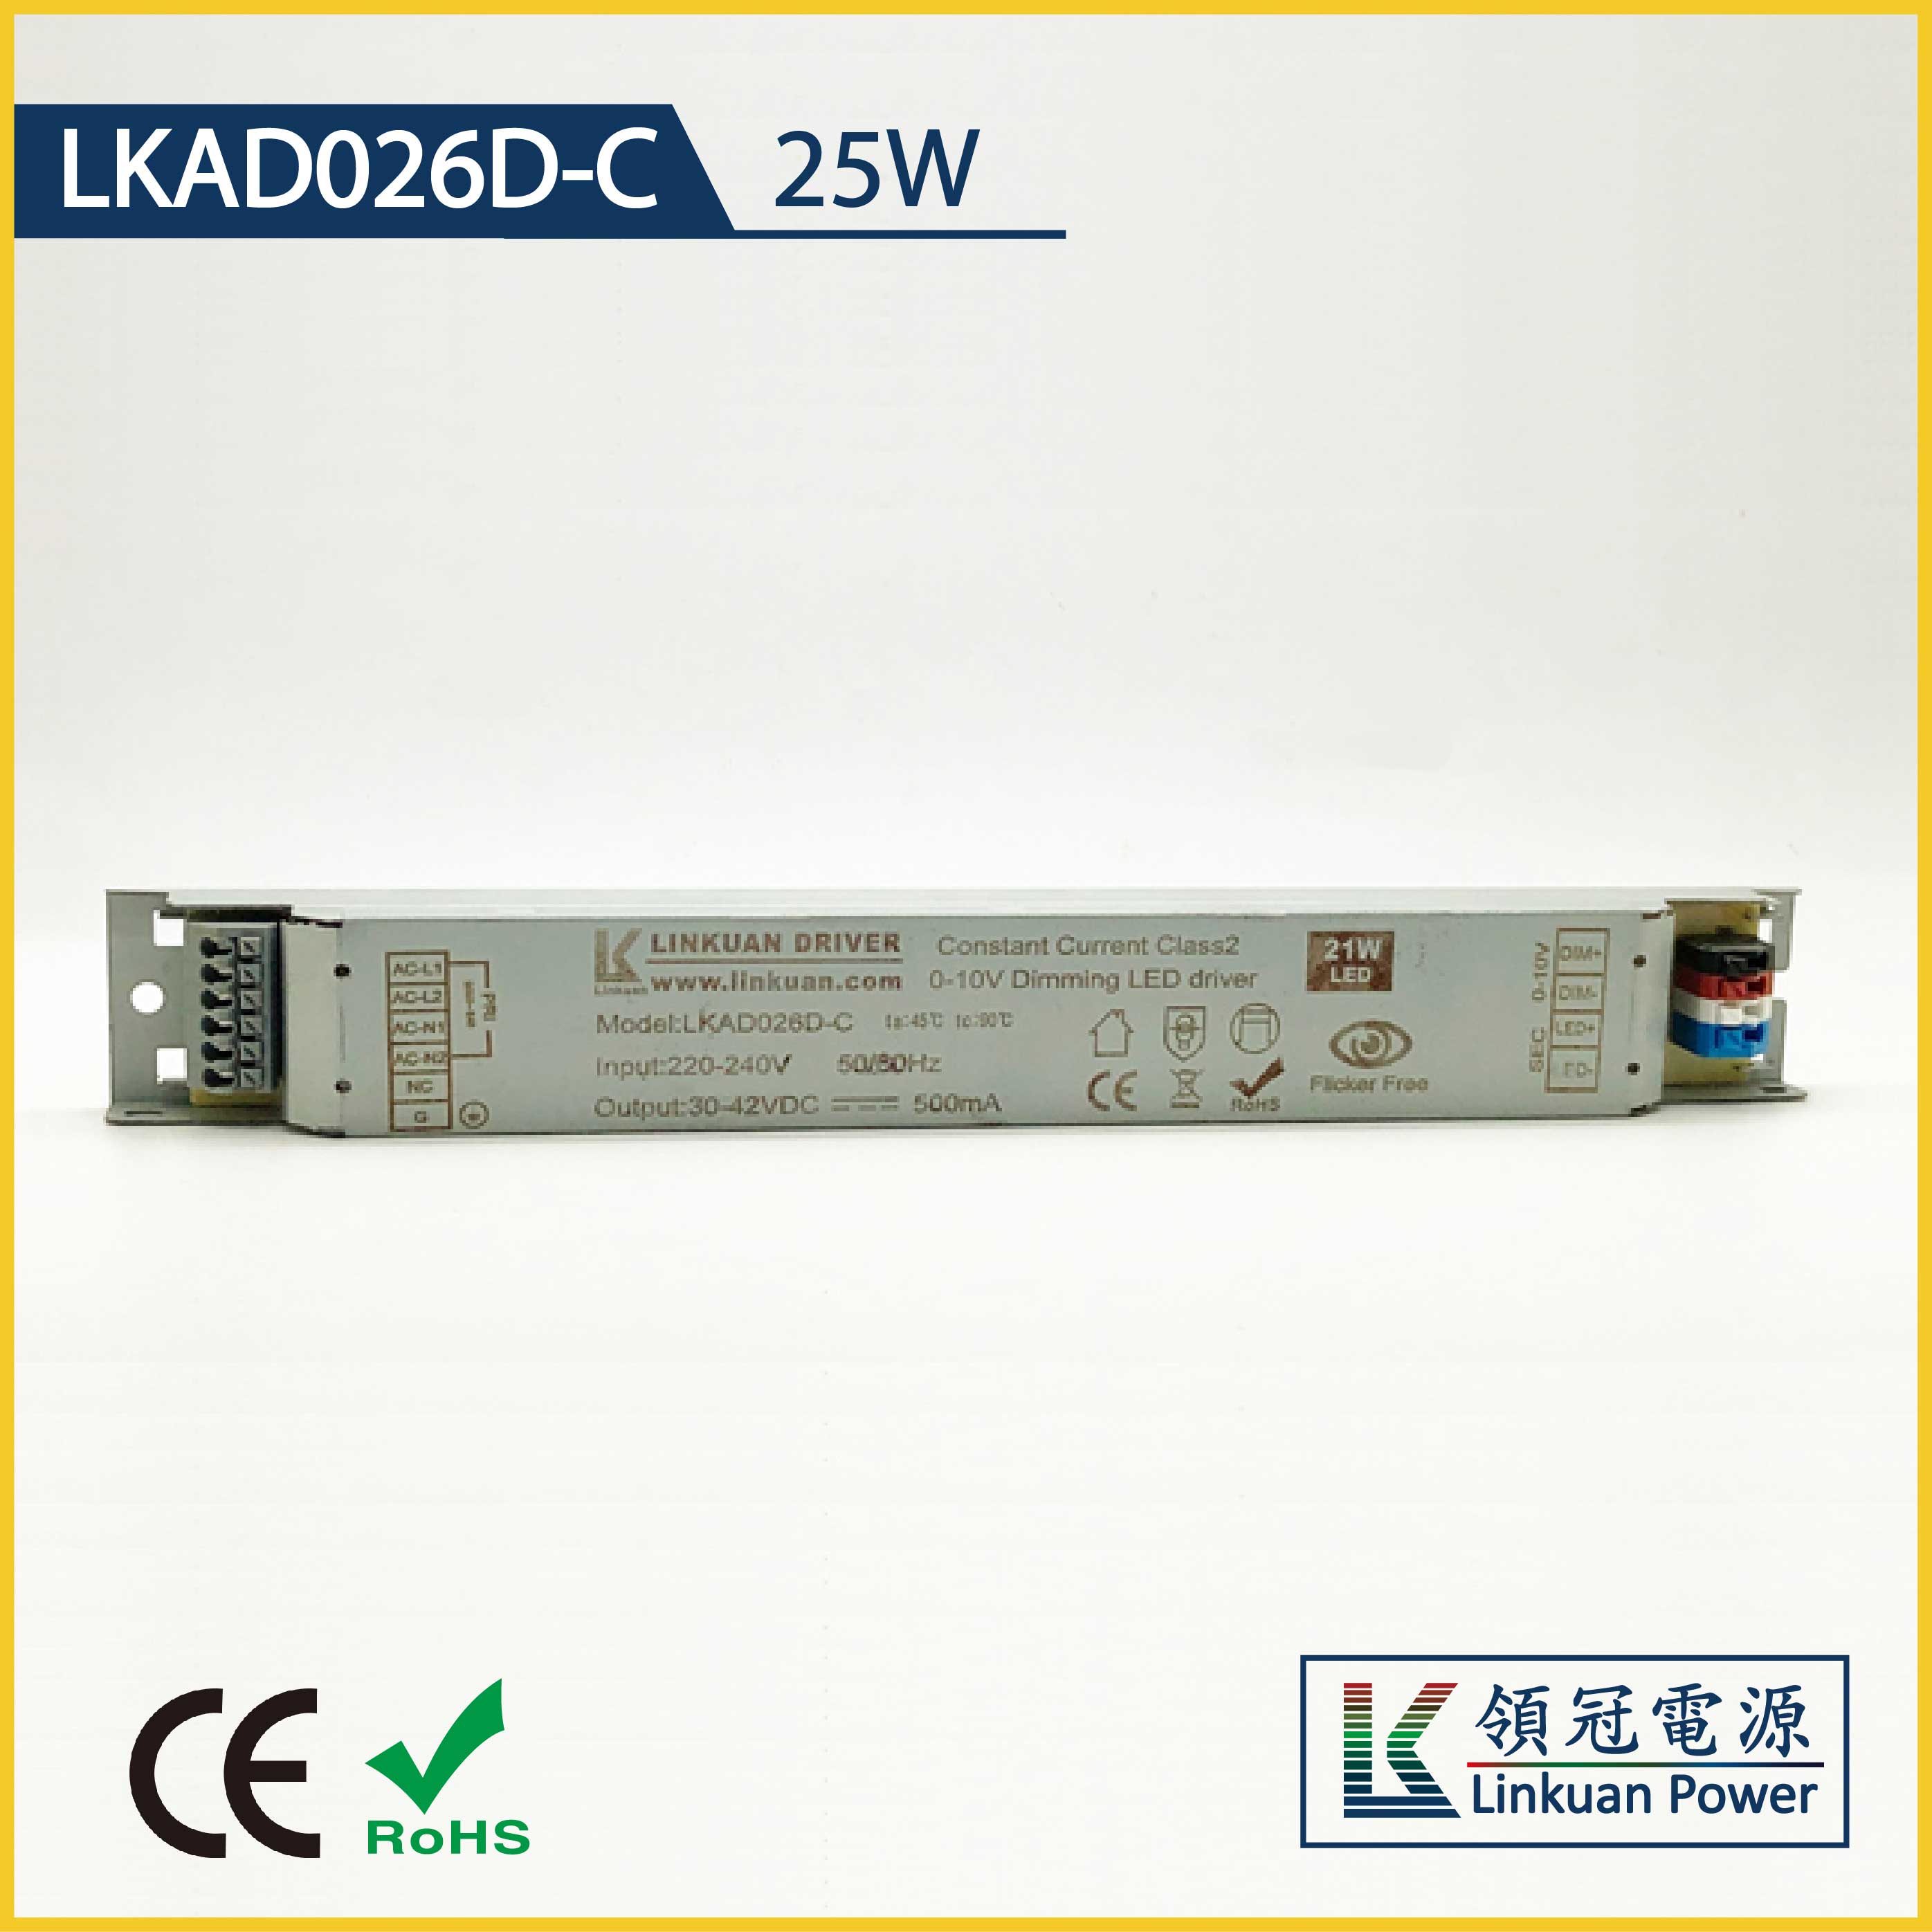 LKAD026D-C 25W 10-42V 600mA Linear Lamp 0-10V dimming  led driver